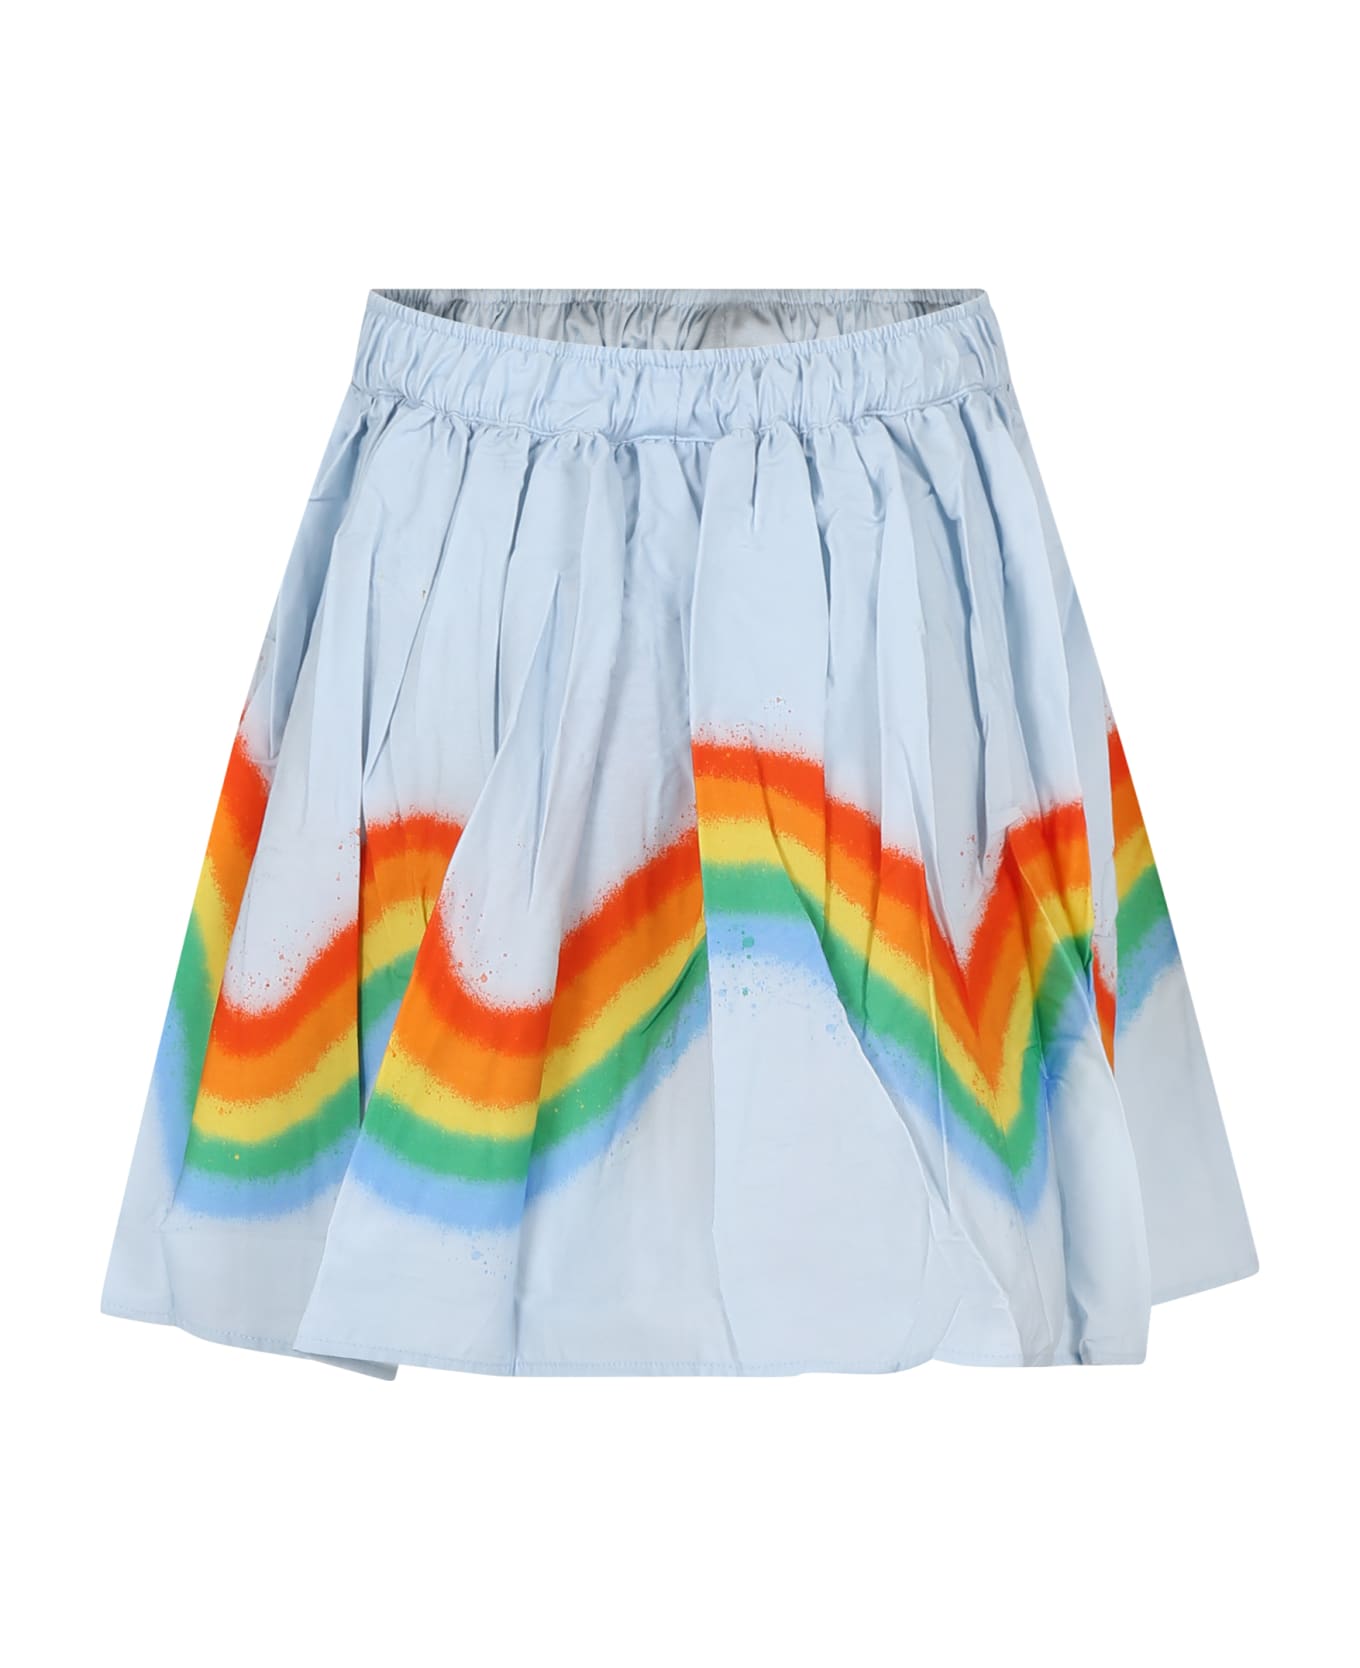 Molo Casual Sky Blue Skirt Bonnie For Girl With Rainbow - Light Blue